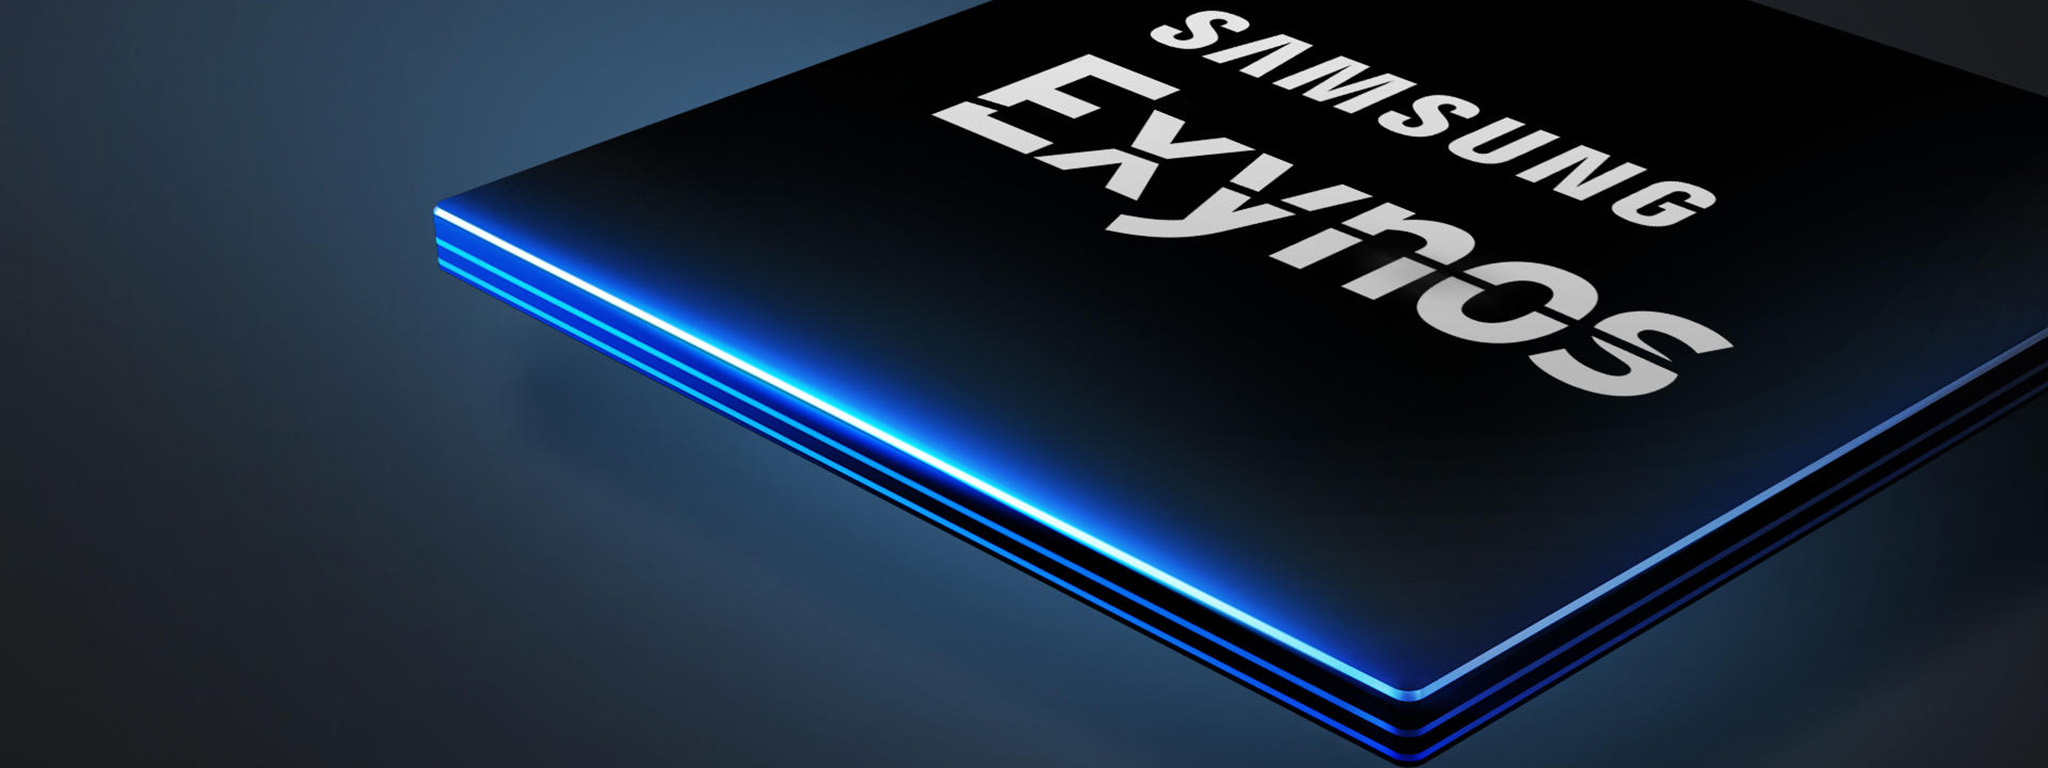 Samsung sẽ cung cấp Exynos cho nhiều hãng làm điện thoại, mục tiêu giành vị trí thứ 3 của MediaTek?